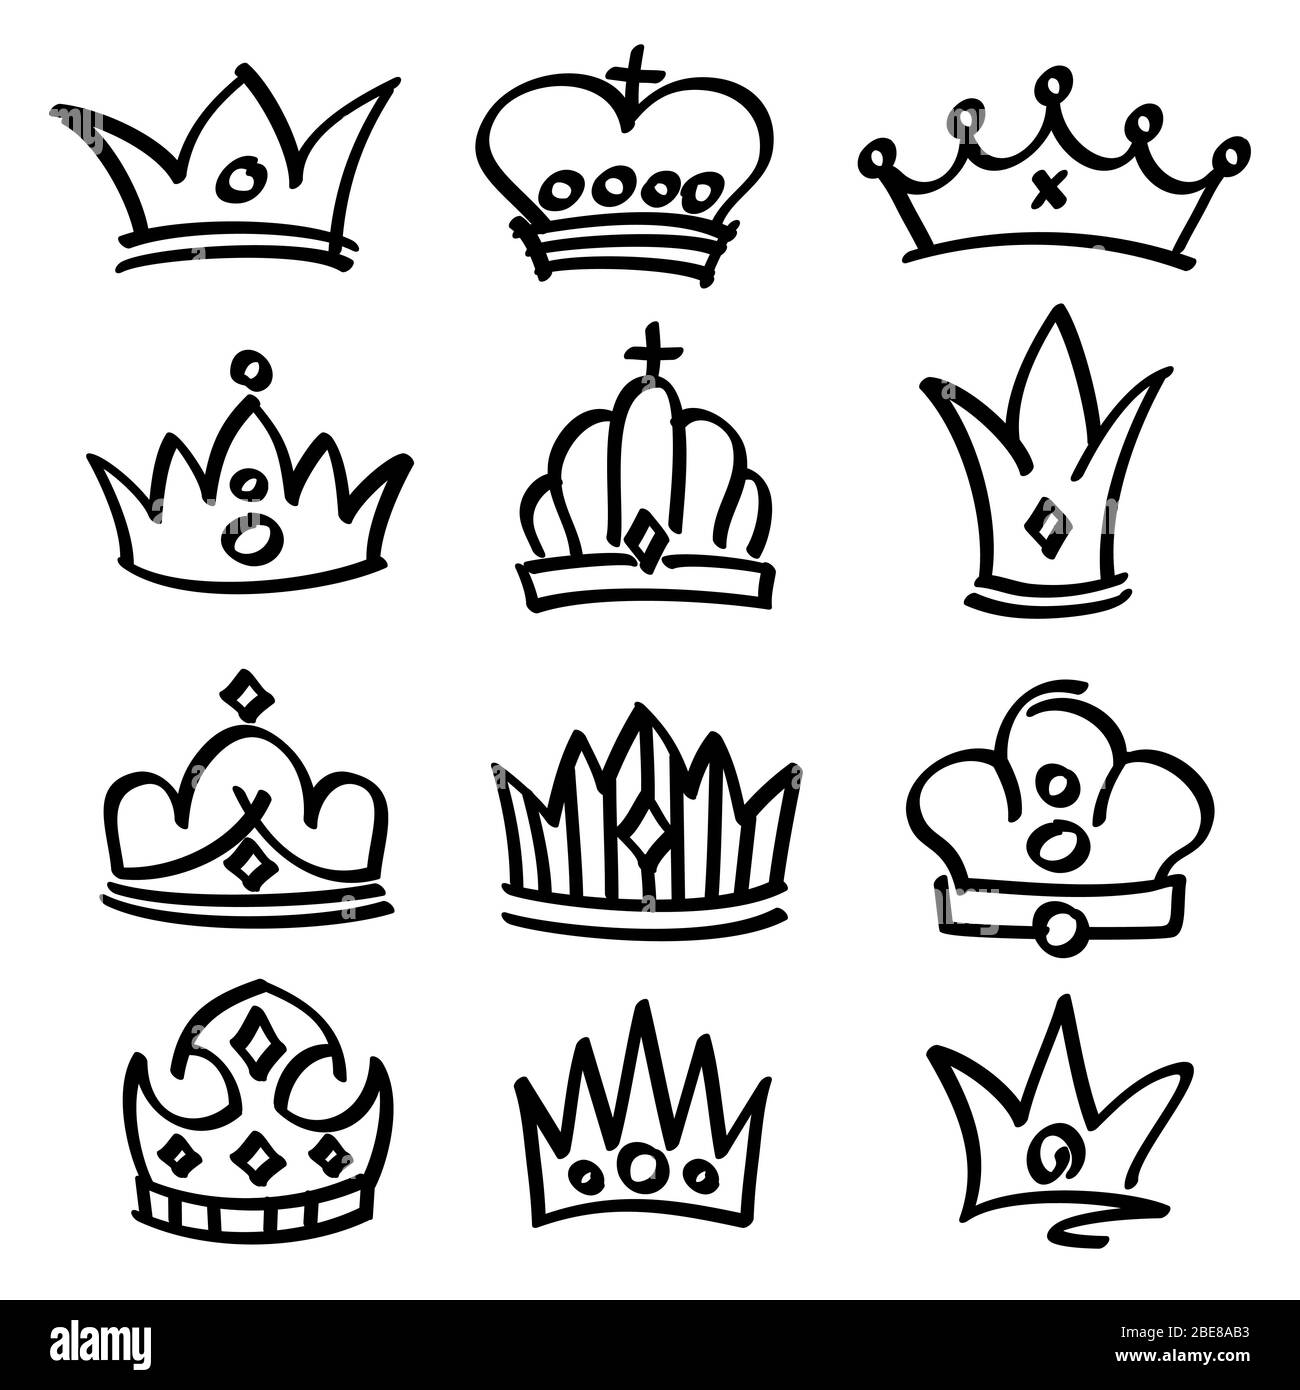 Vektor Hand gezeichnet Prinzessin Kronen. Skizze Doodle Royalty Symbole. Königliche Skizze Krone, Königin und König modische Illustration Stock Vektor